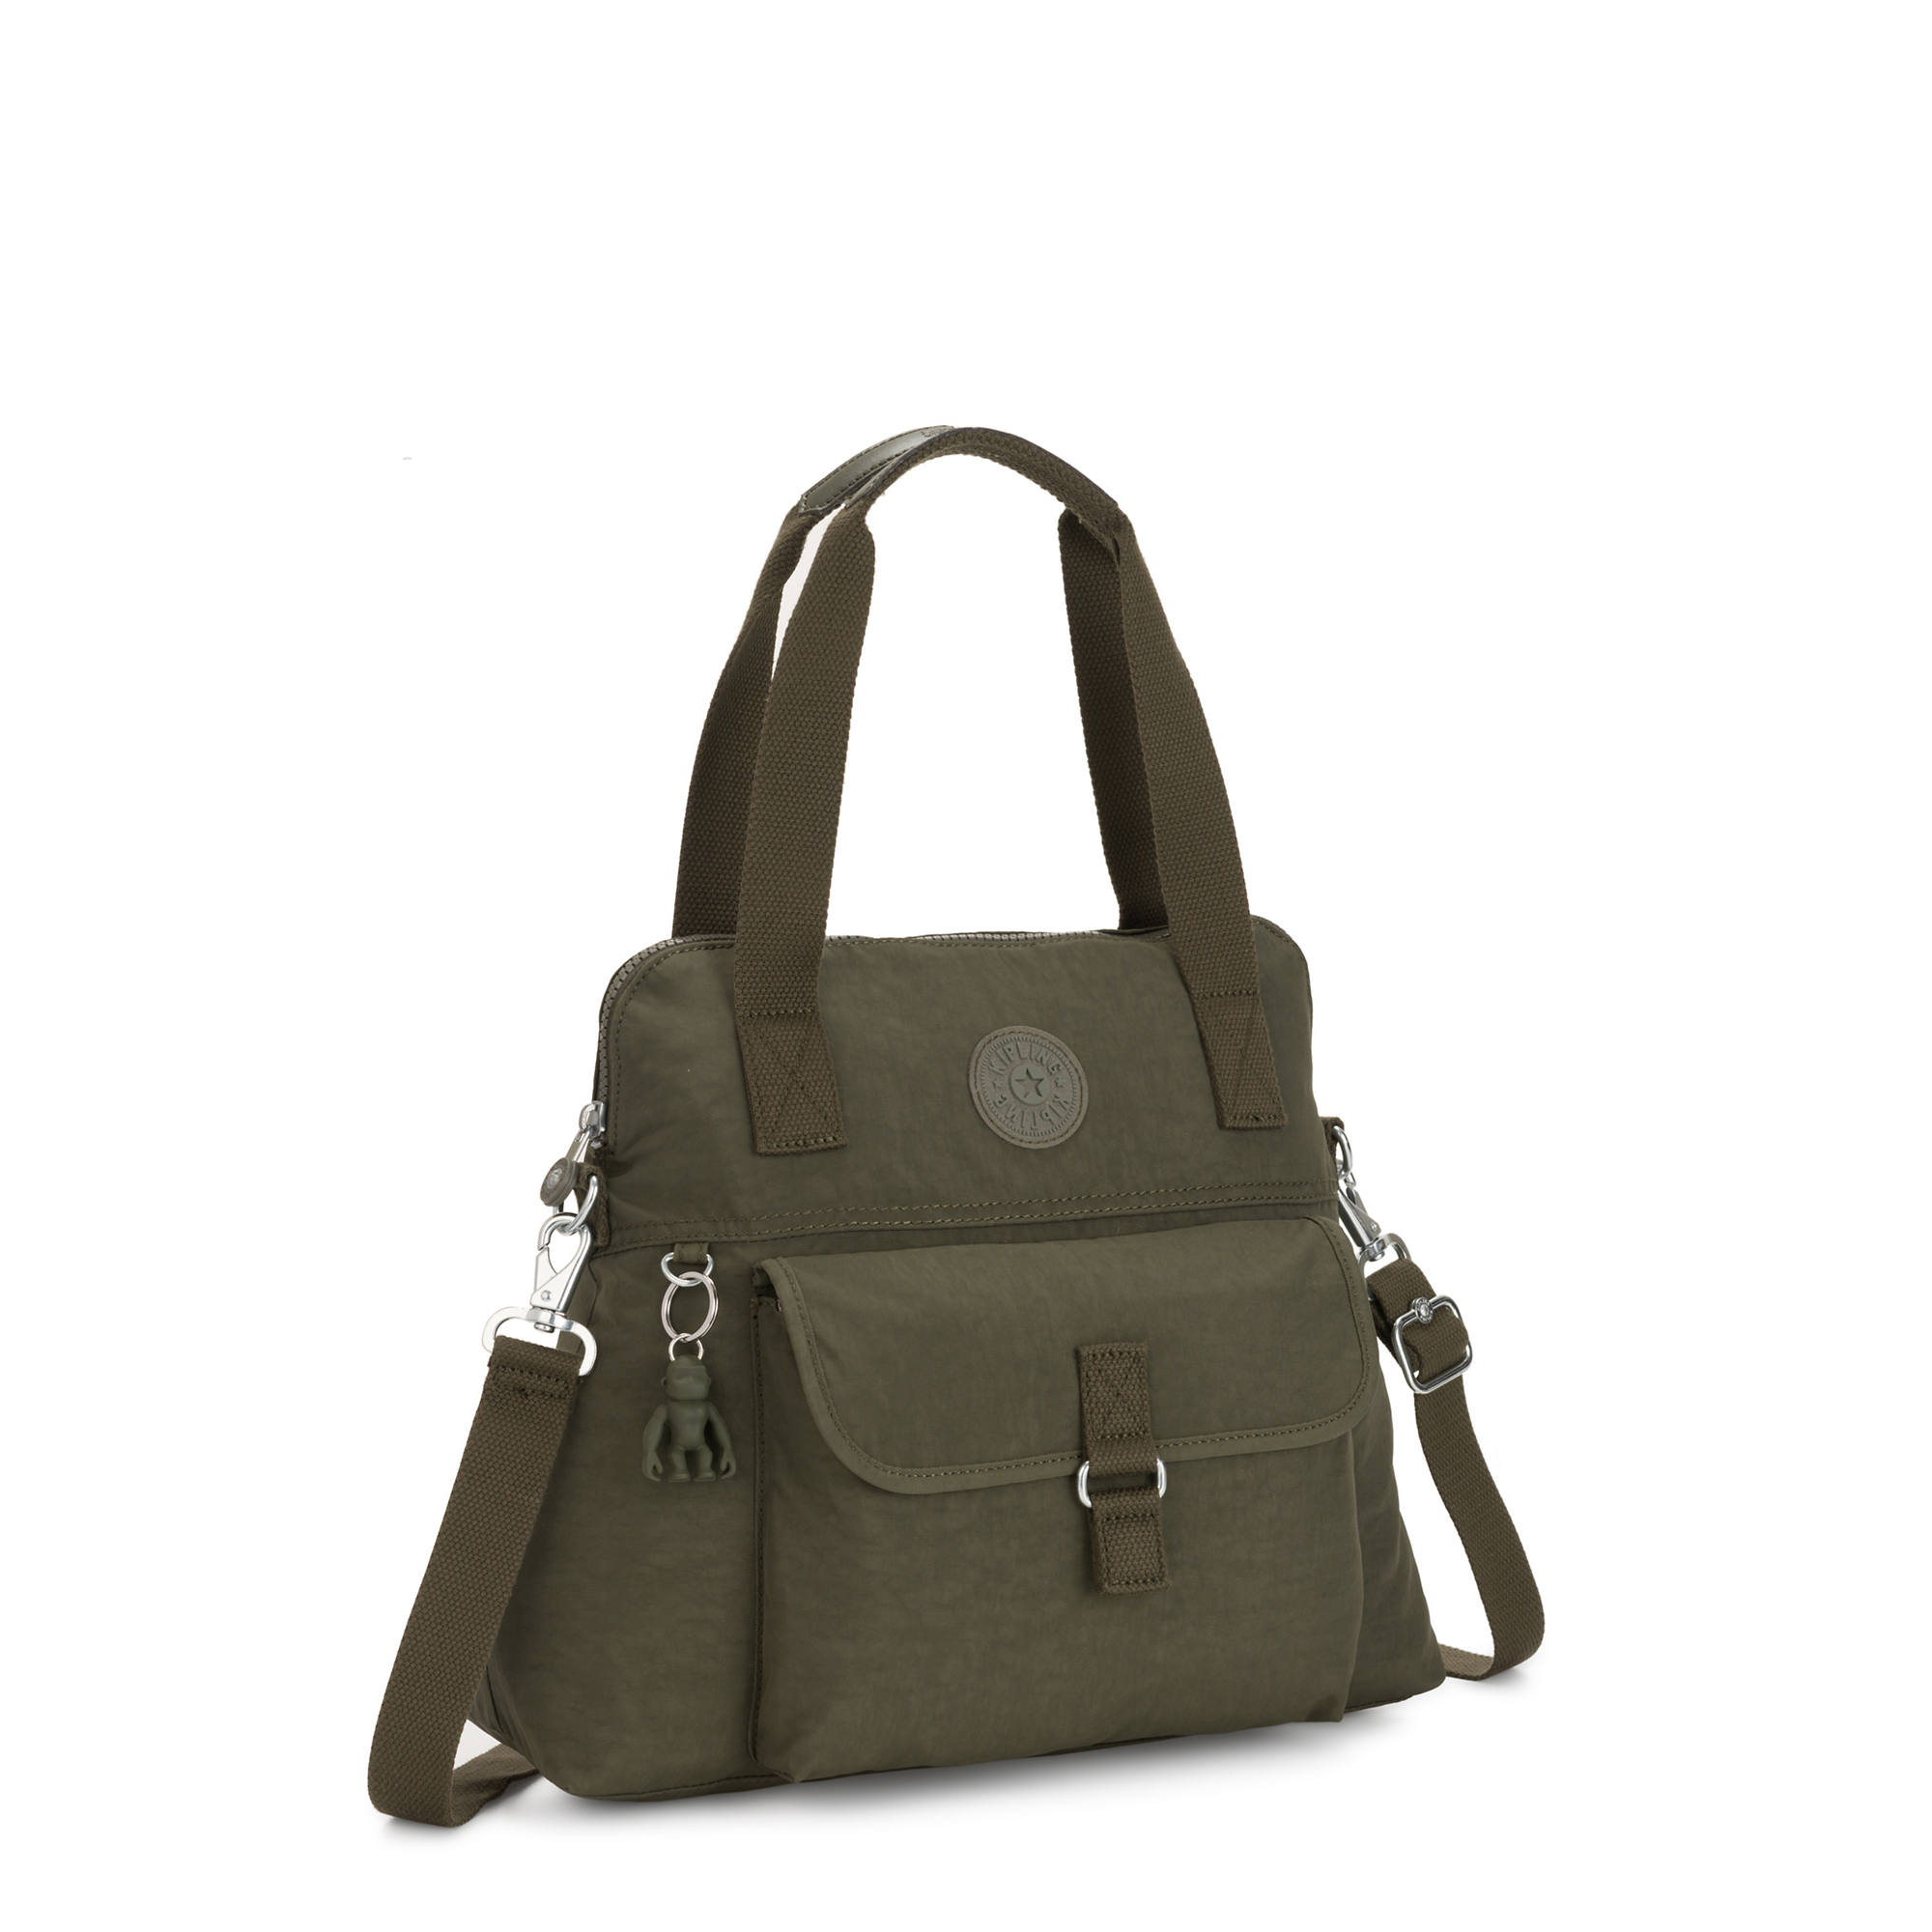 Kipling Pahneiro Handbag | eBay